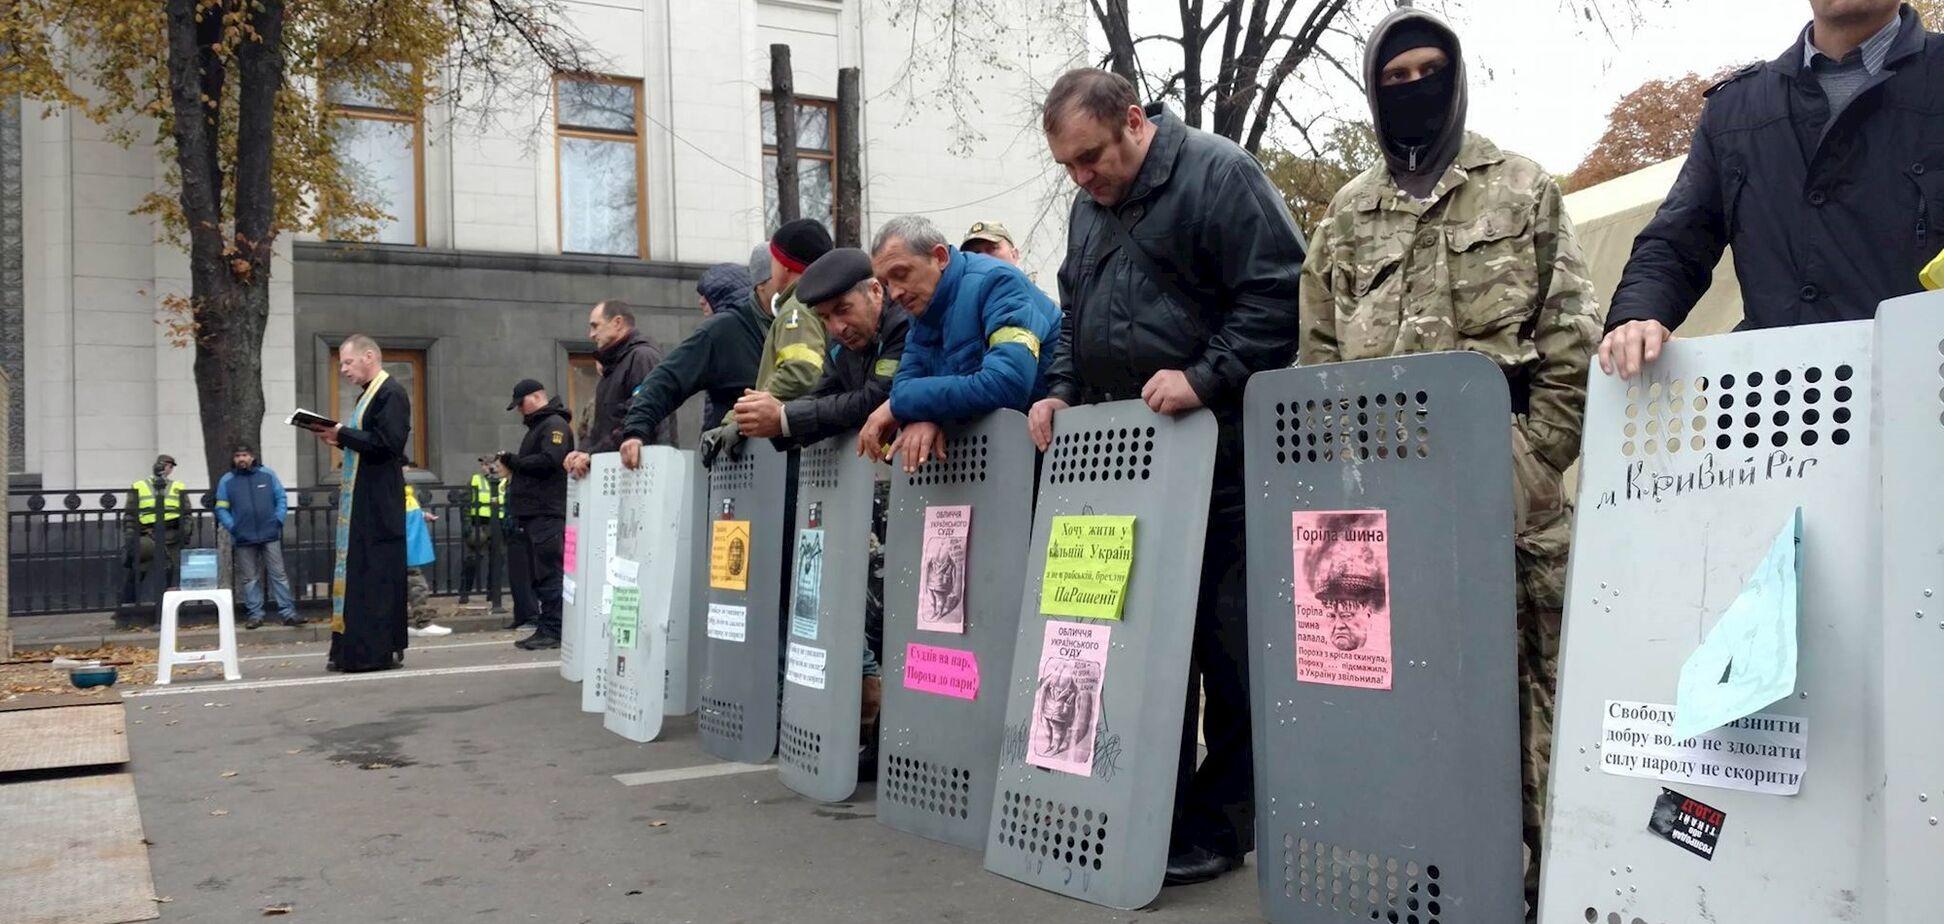 Протесты в центре Киева: полиция выдвинула новое требование митингующим